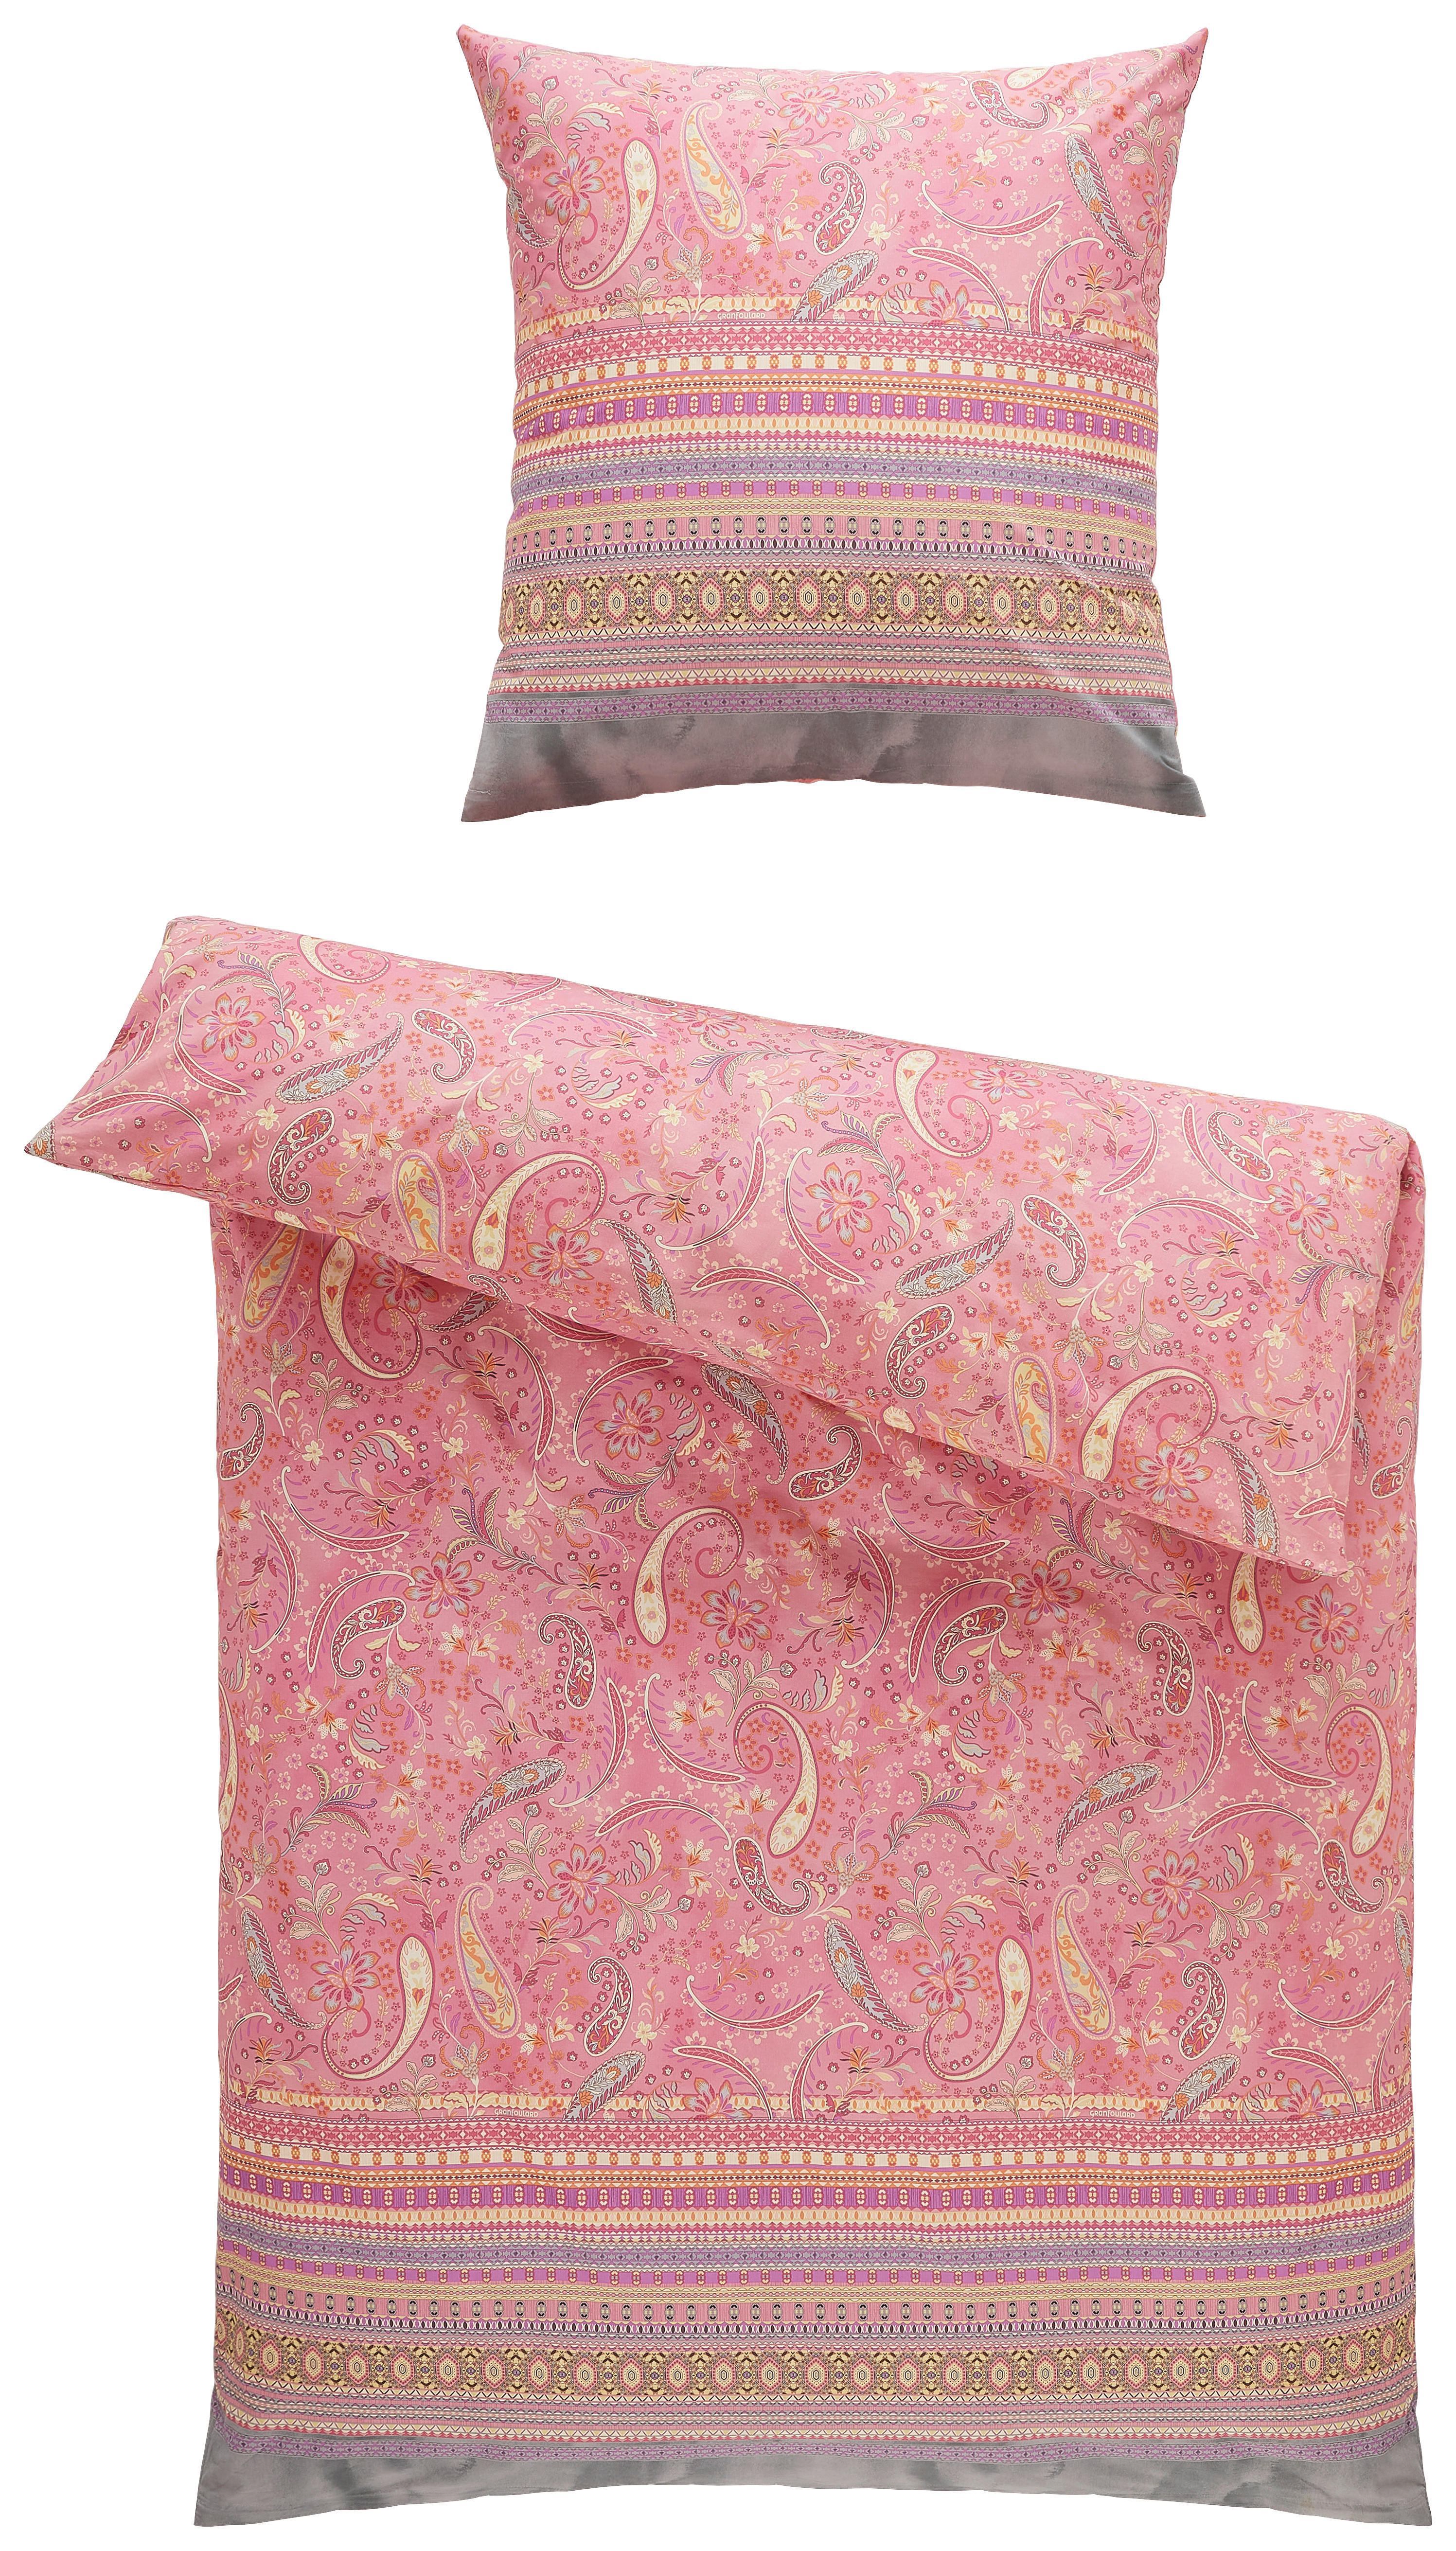 BETTWÄSCHE Burano  - Pink, LIFESTYLE, Textil (135/200cm) - Bassetti